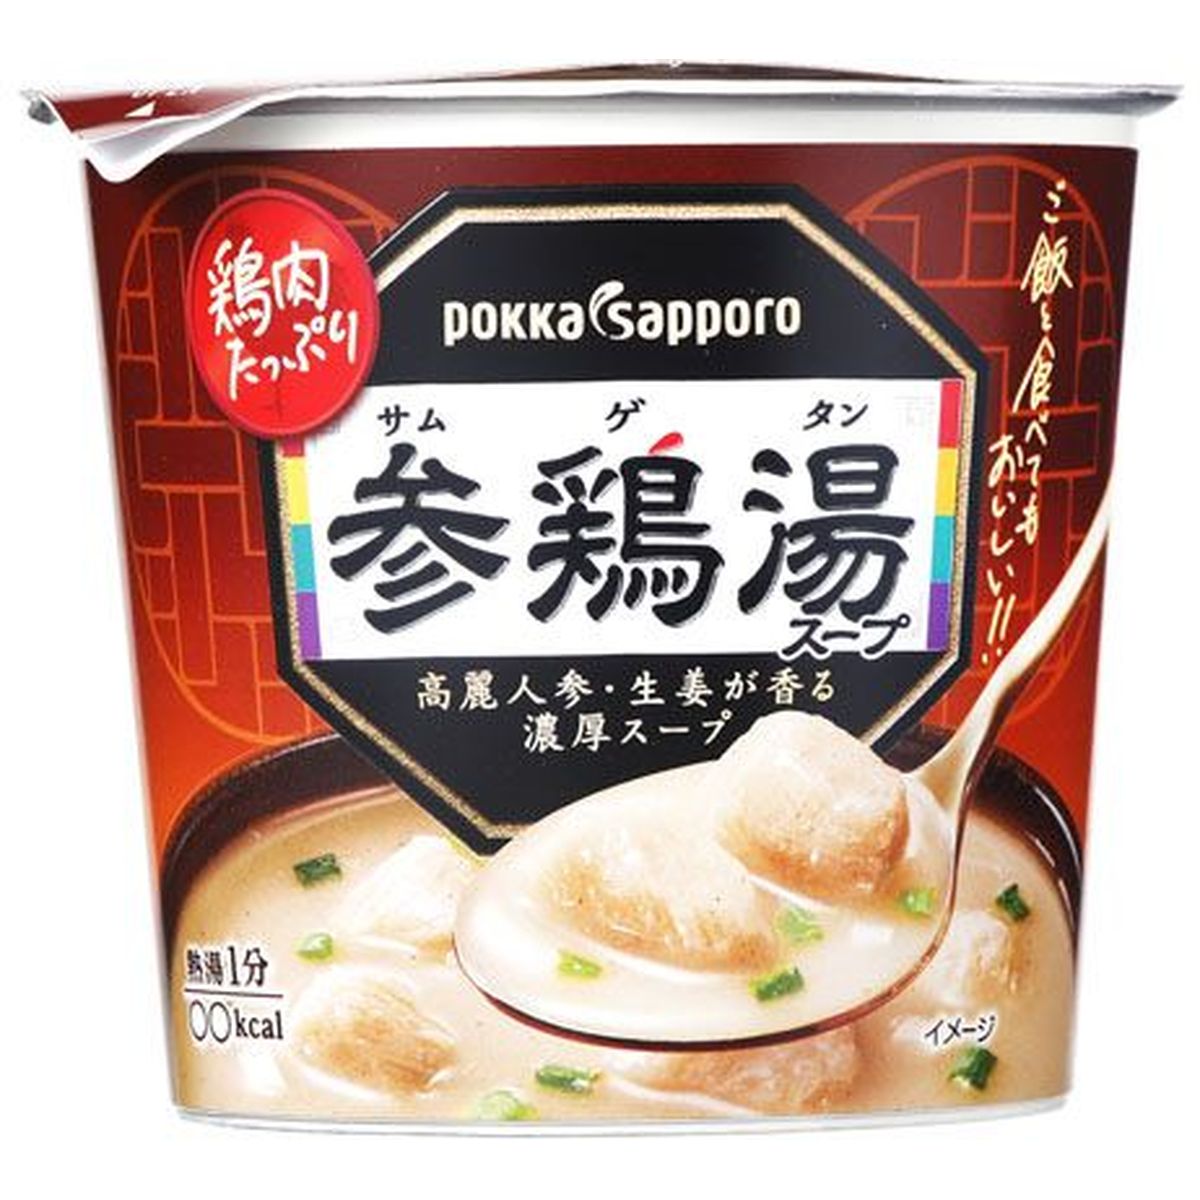 【6個入リ】ポッカサッポロ 参鶏湯スープ カップ 20g